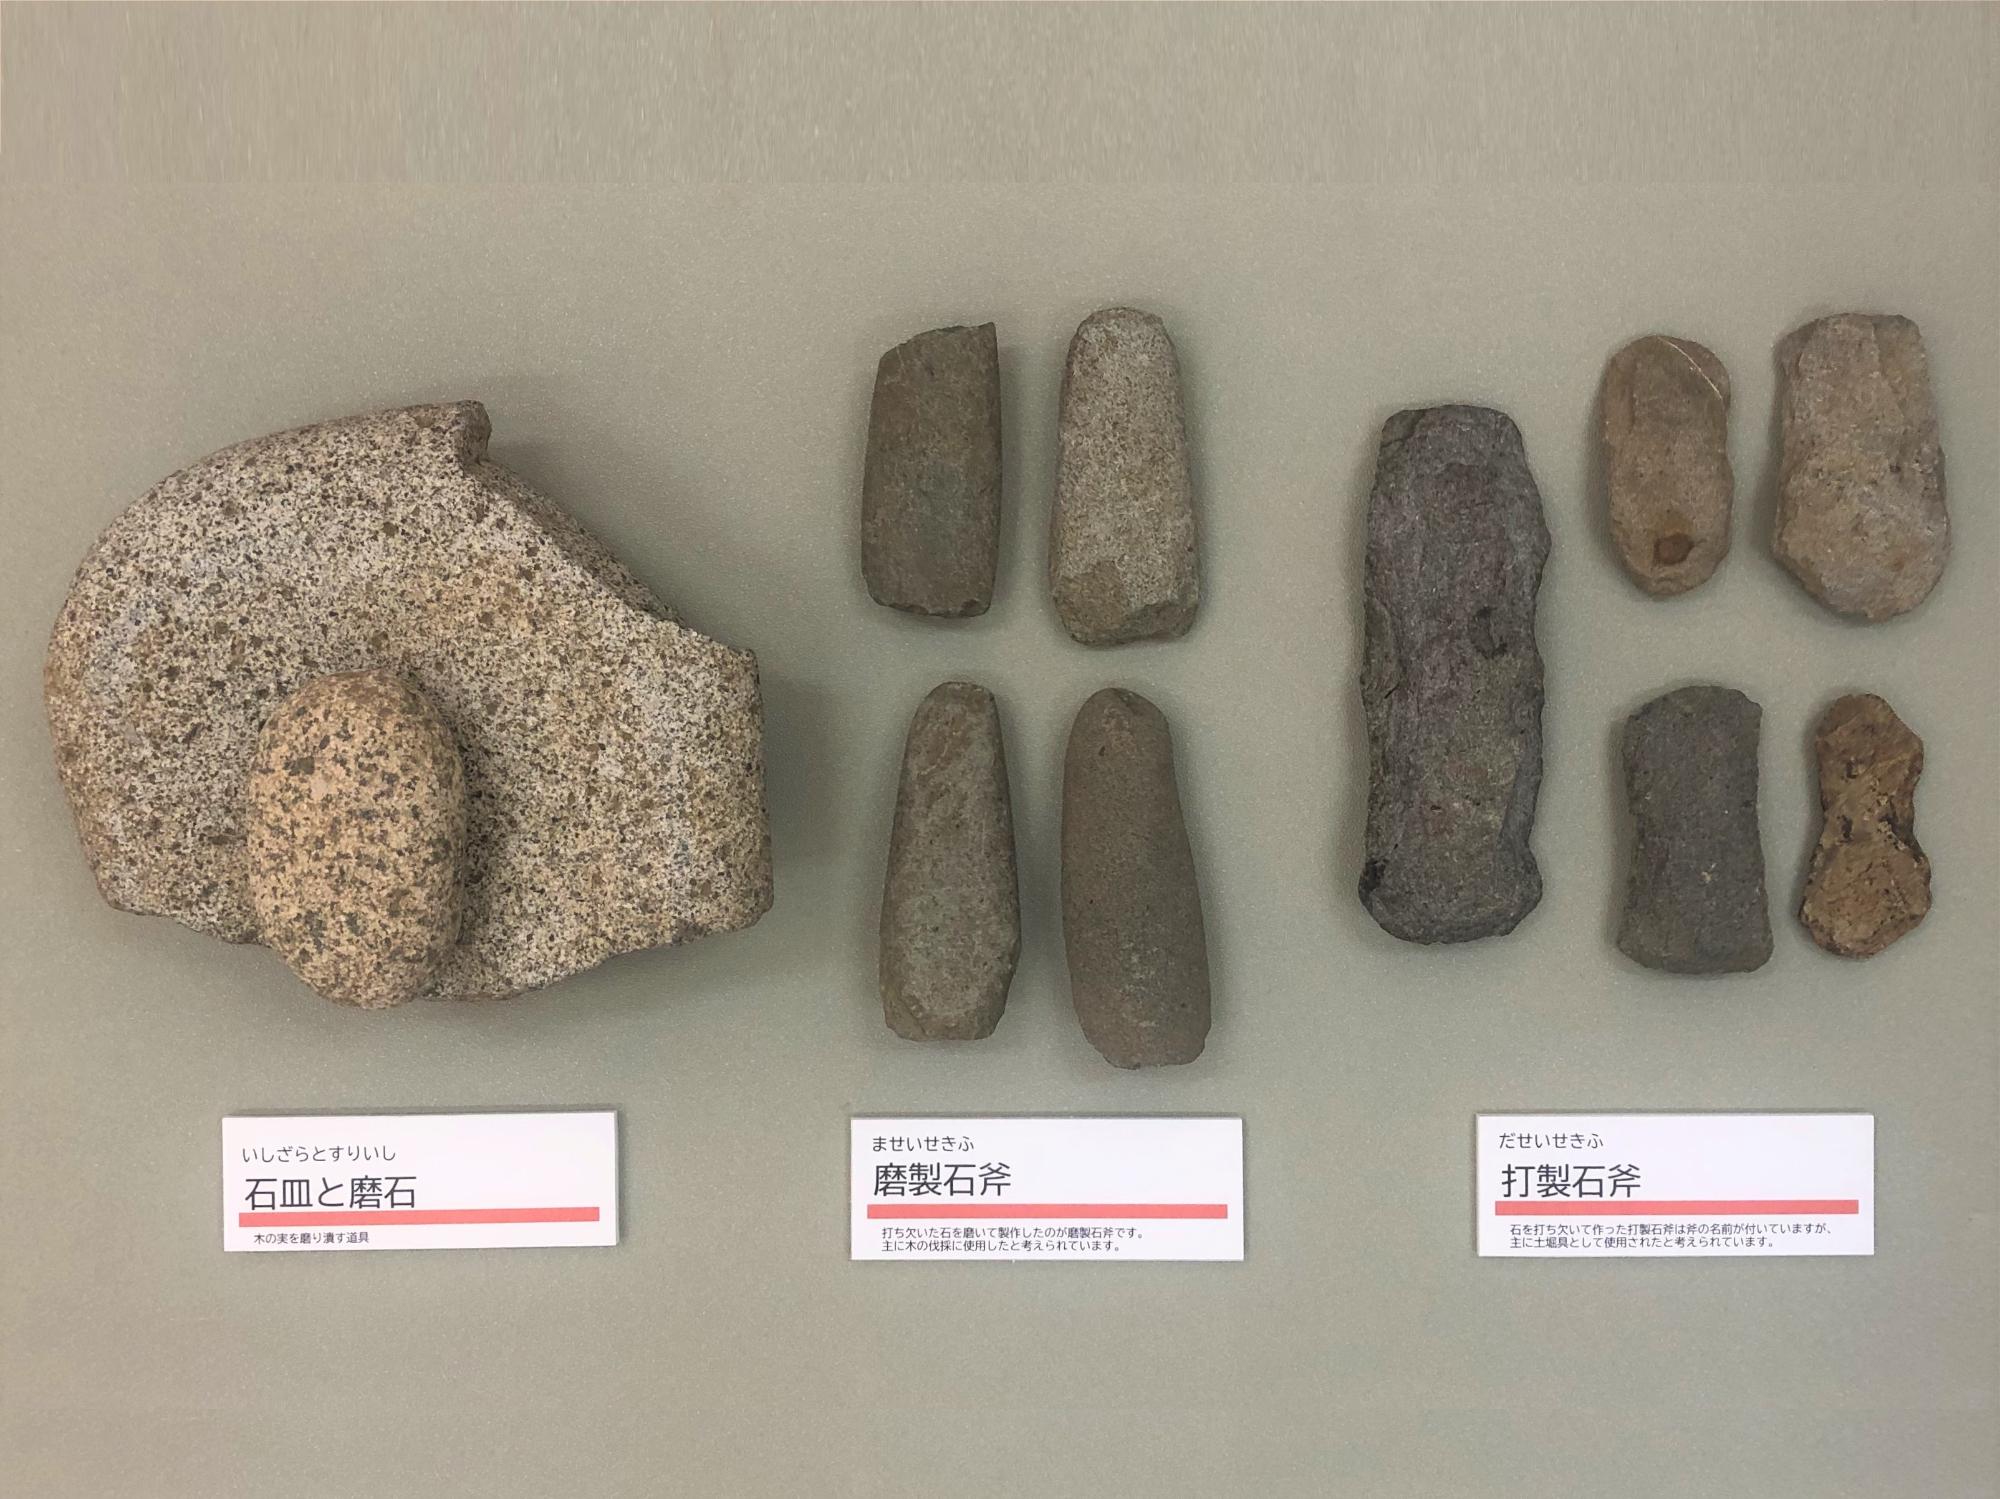 打製石斧（写真右）、摩製石斧（写真中央）、石皿と磨石（写真左）